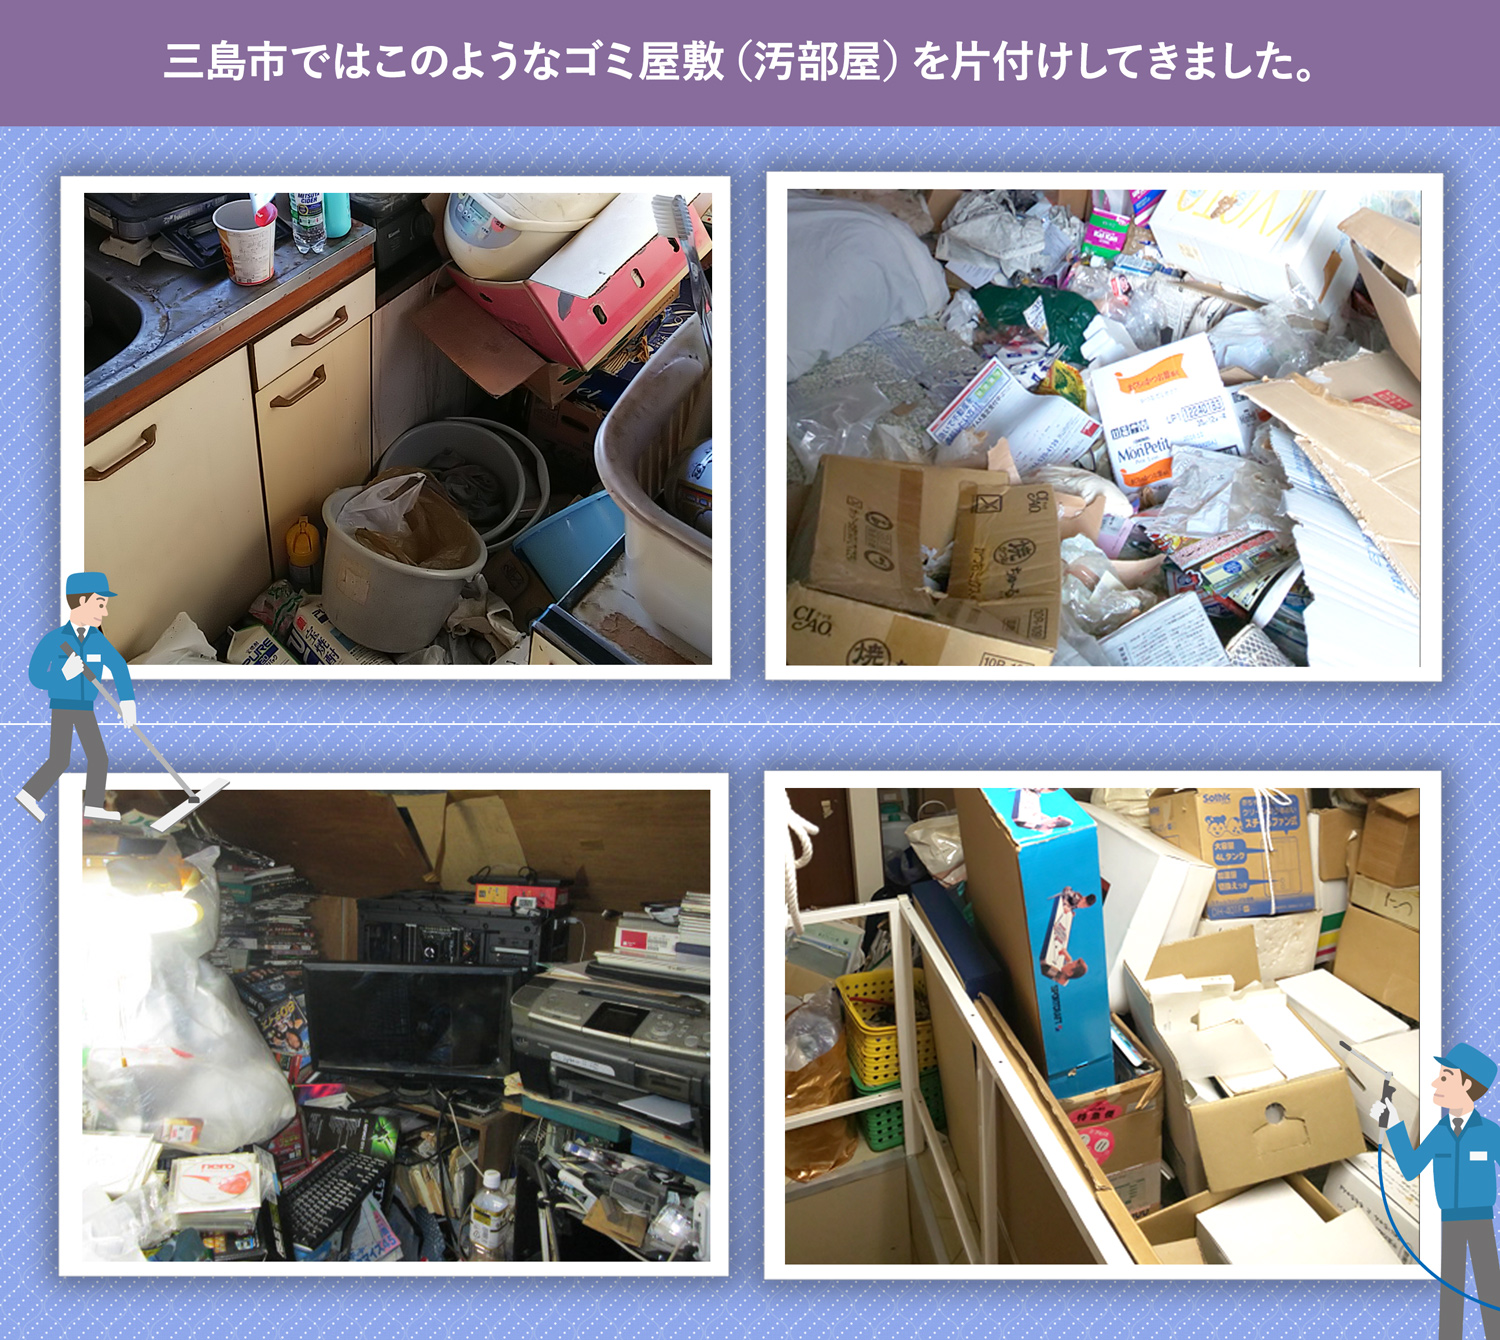 三島市で行ったで行ったごみ屋敷・汚部屋の片付けの一例